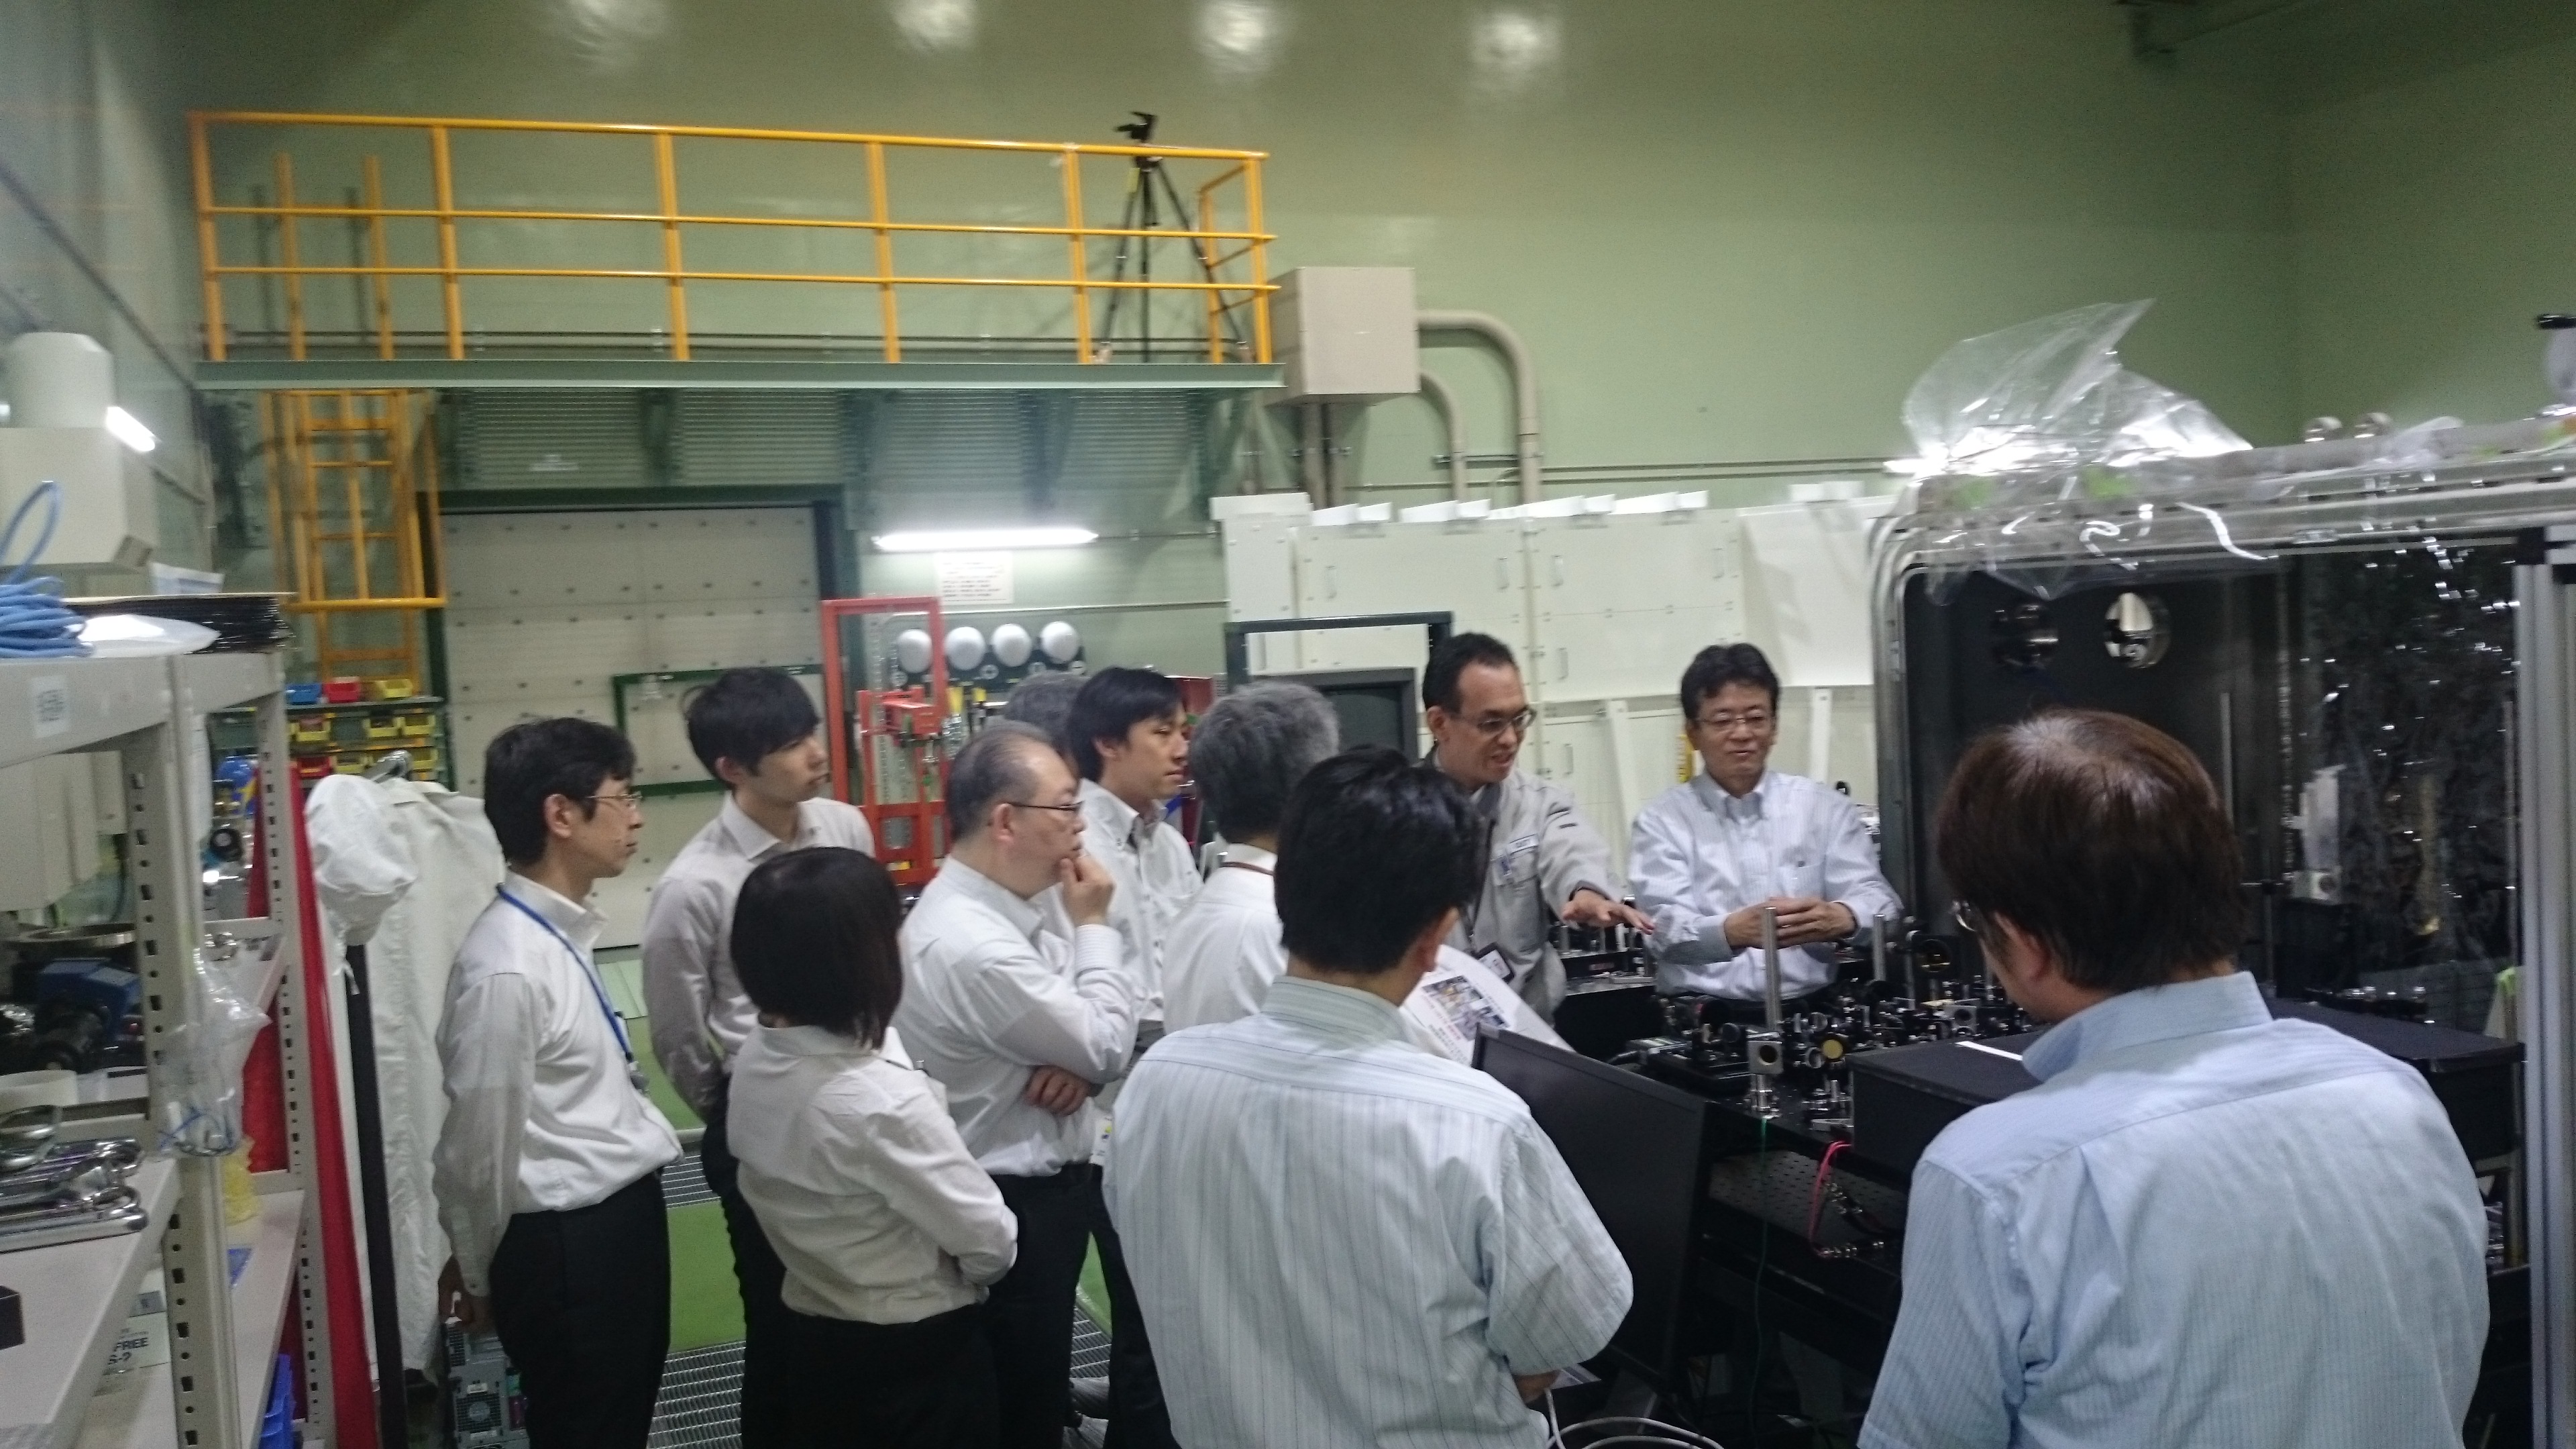 レーザーイオン加速実験装置を説明する神門リーダーの写真